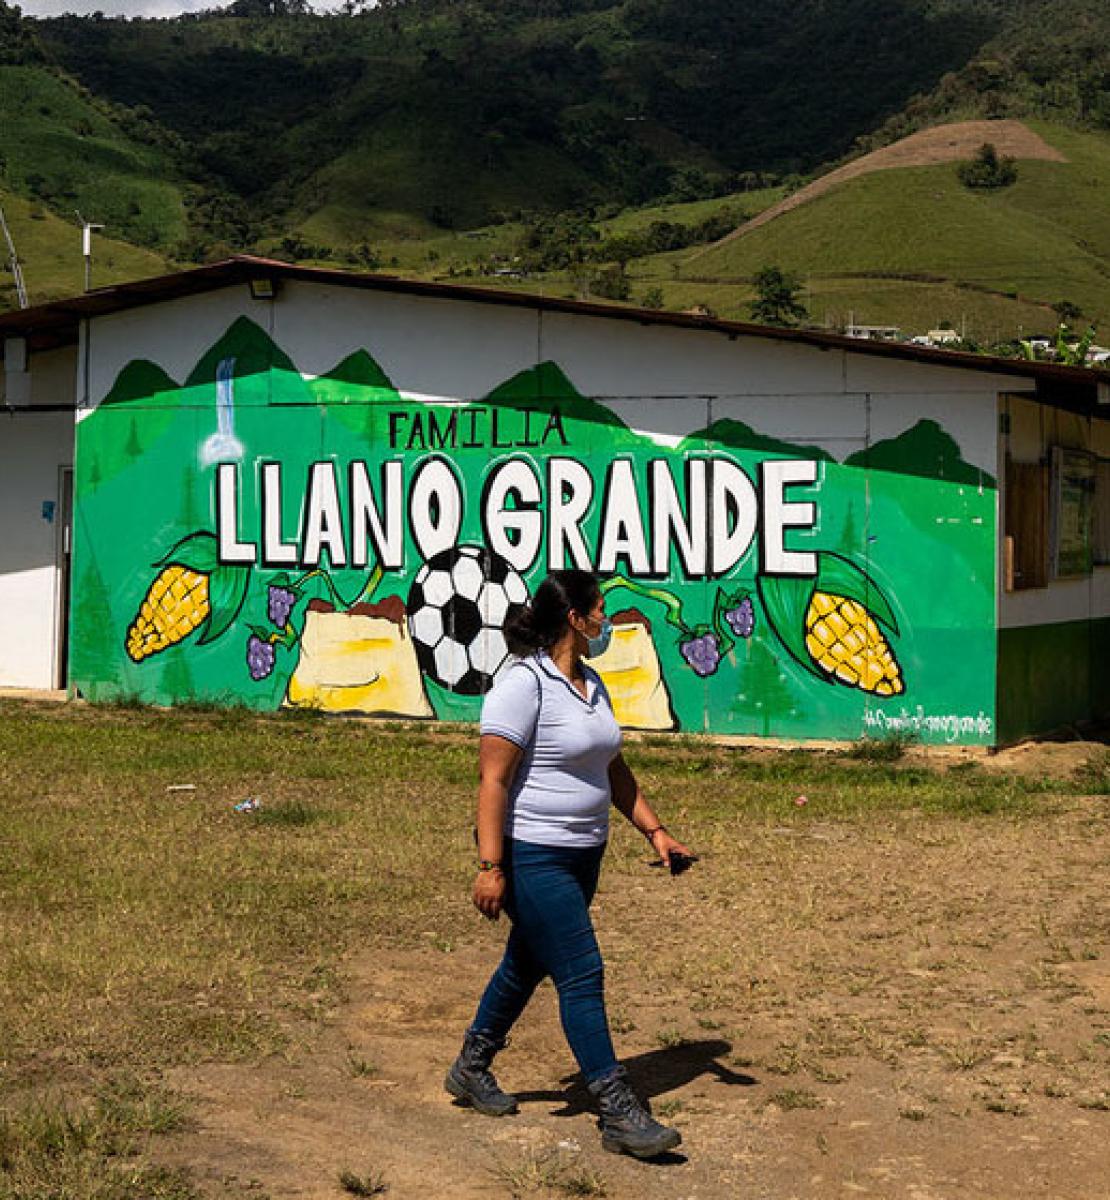 Una mujer con una mascarilla pasa por delante de una casa con un mural verde pintado con figuras alusivas a comida y un balón de fútbol.